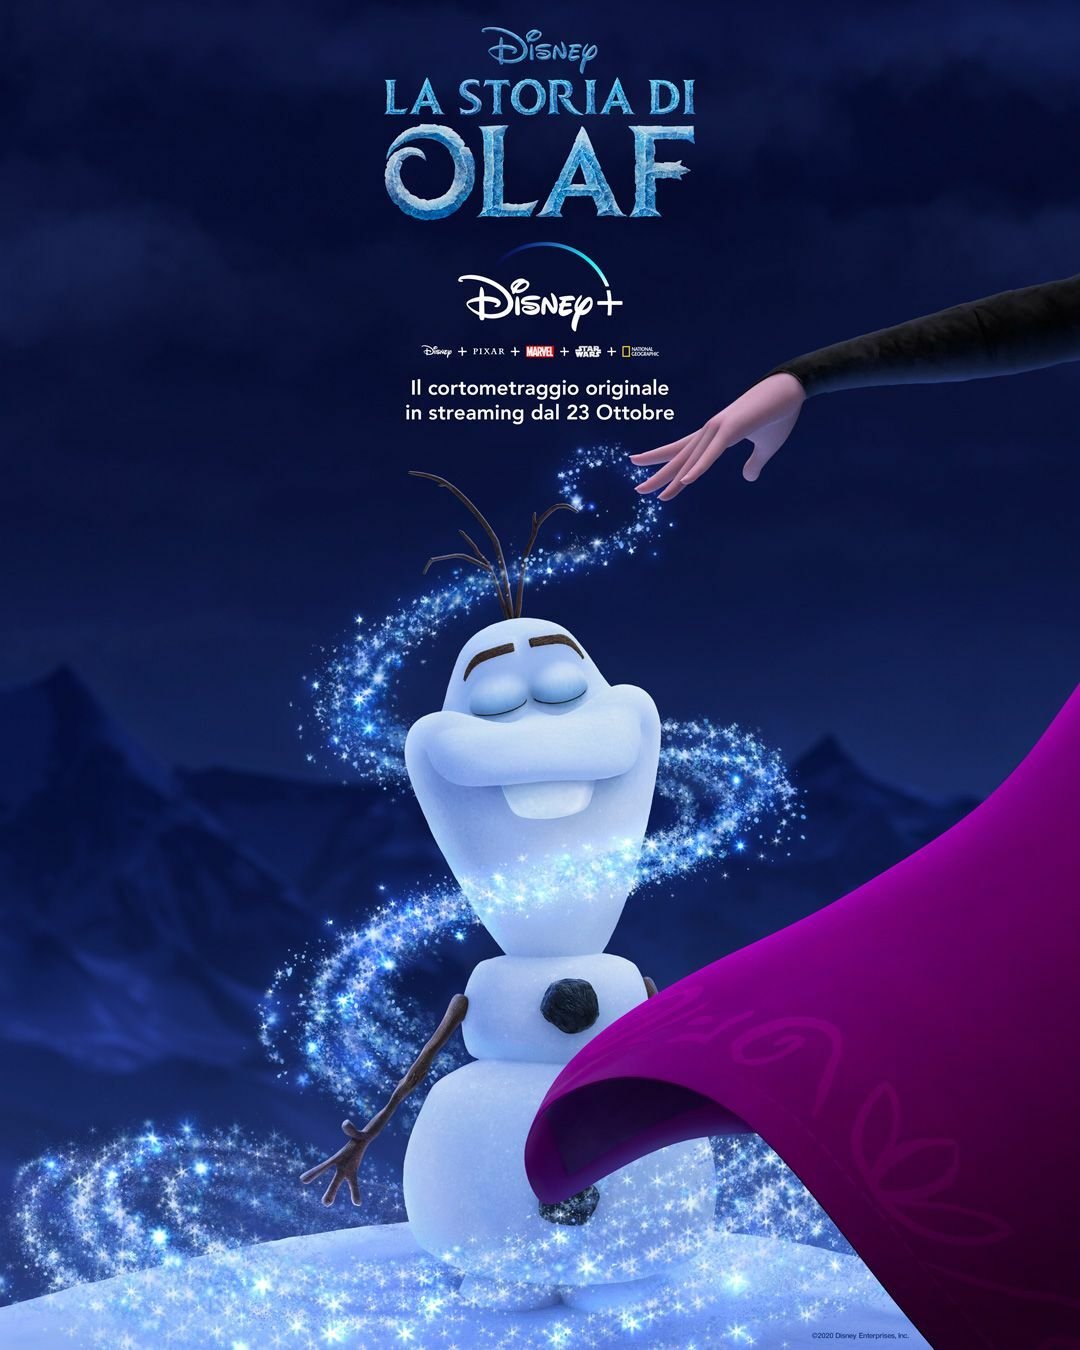 El póster oficial de la historia de Olaf